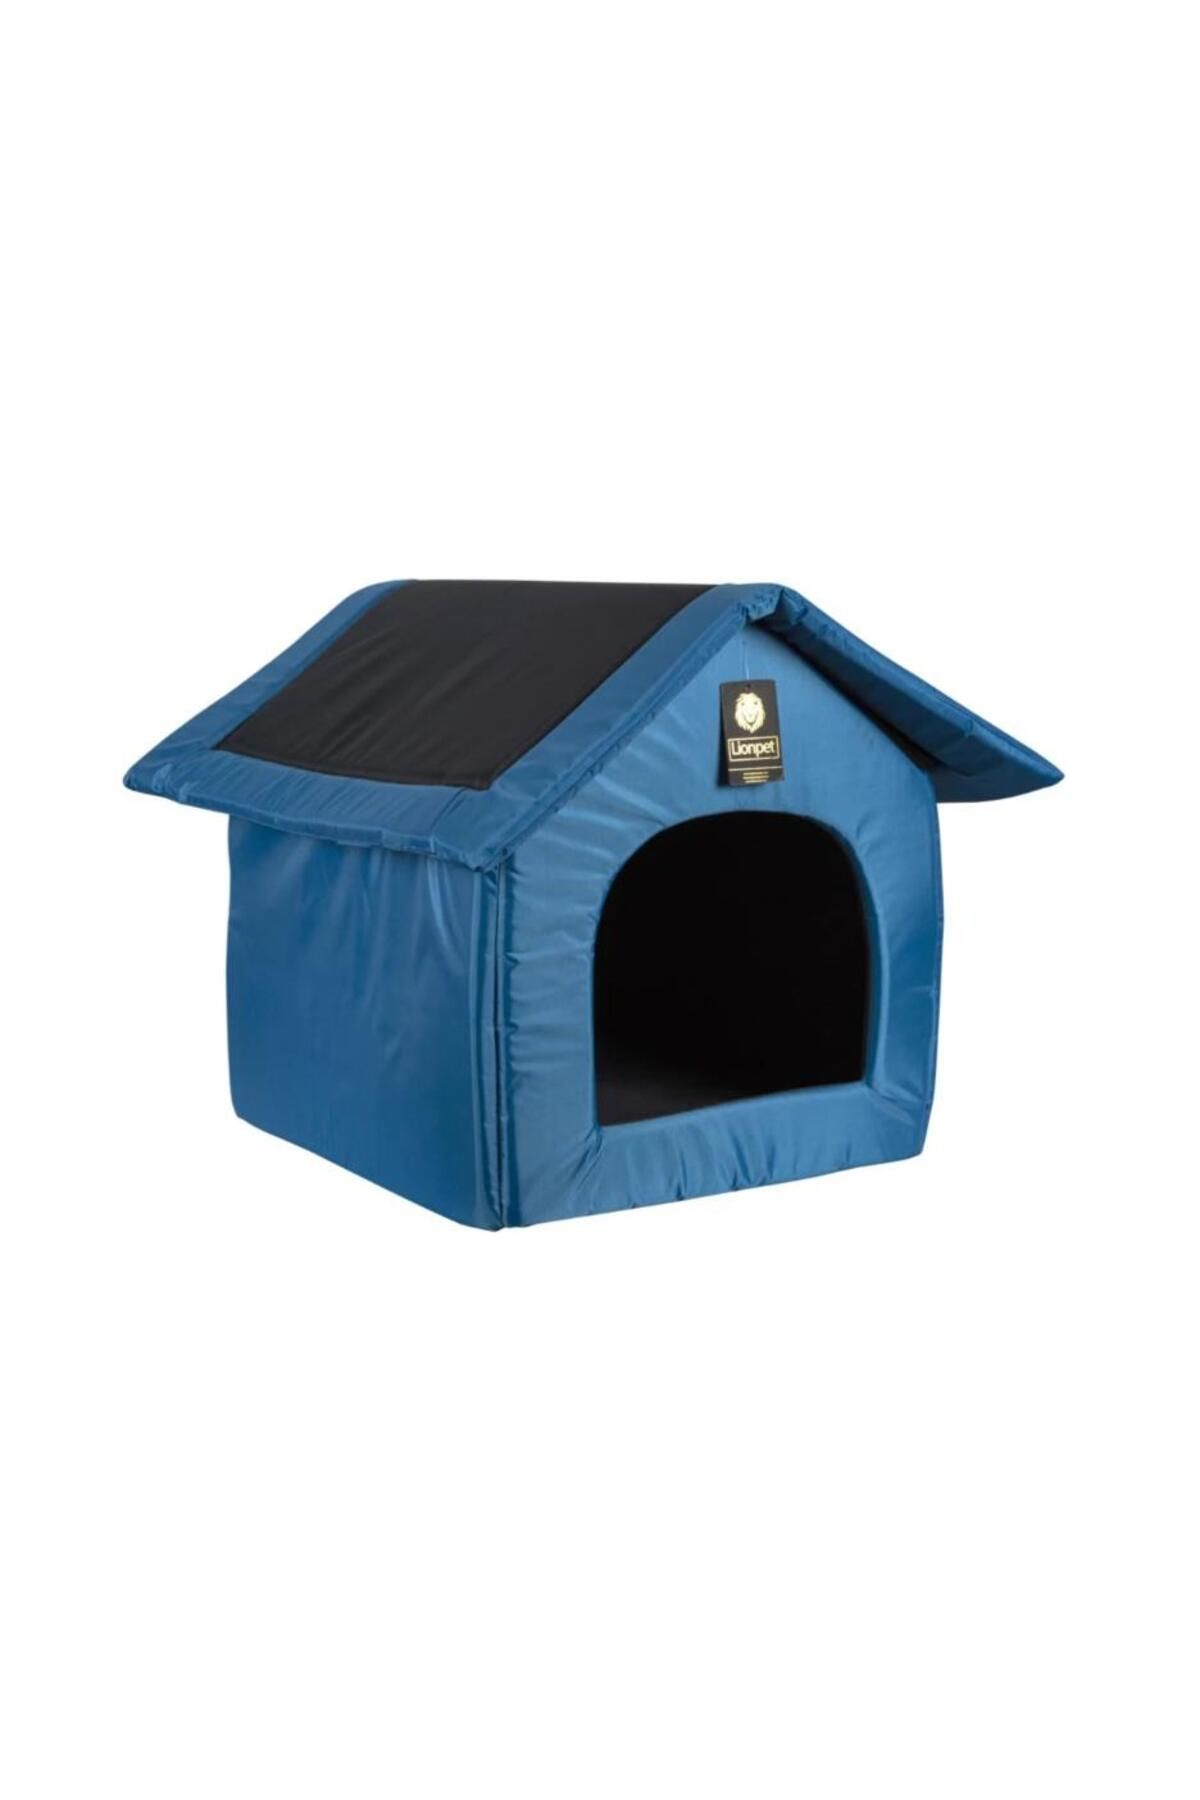 Glipet GLİPET Sıvı Geçirmez Kedi Köpek Kulübe Yatak Mavi